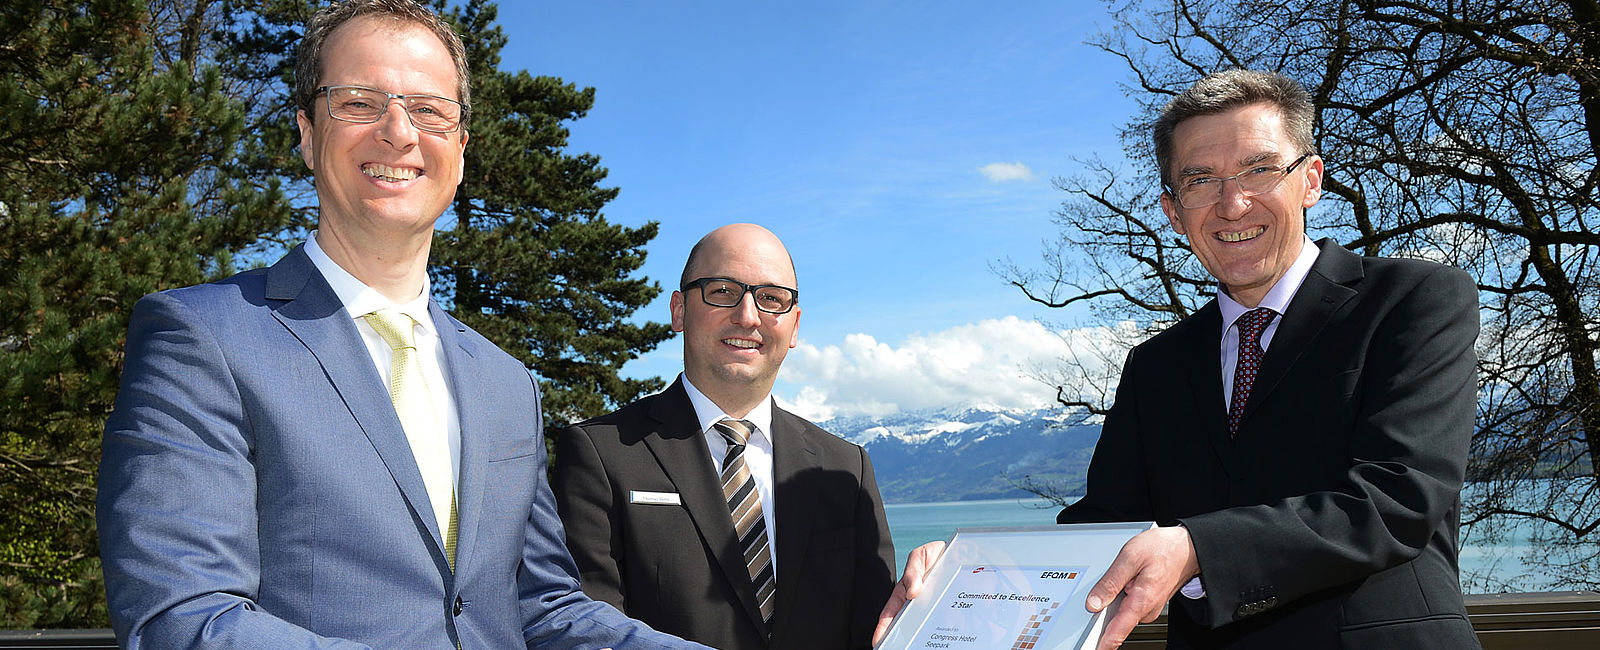 HOTEL NEWS
 EFQM Qualitäts-Zertifikat für Congress Hotel Seepark Thun erneut bestätigt 
